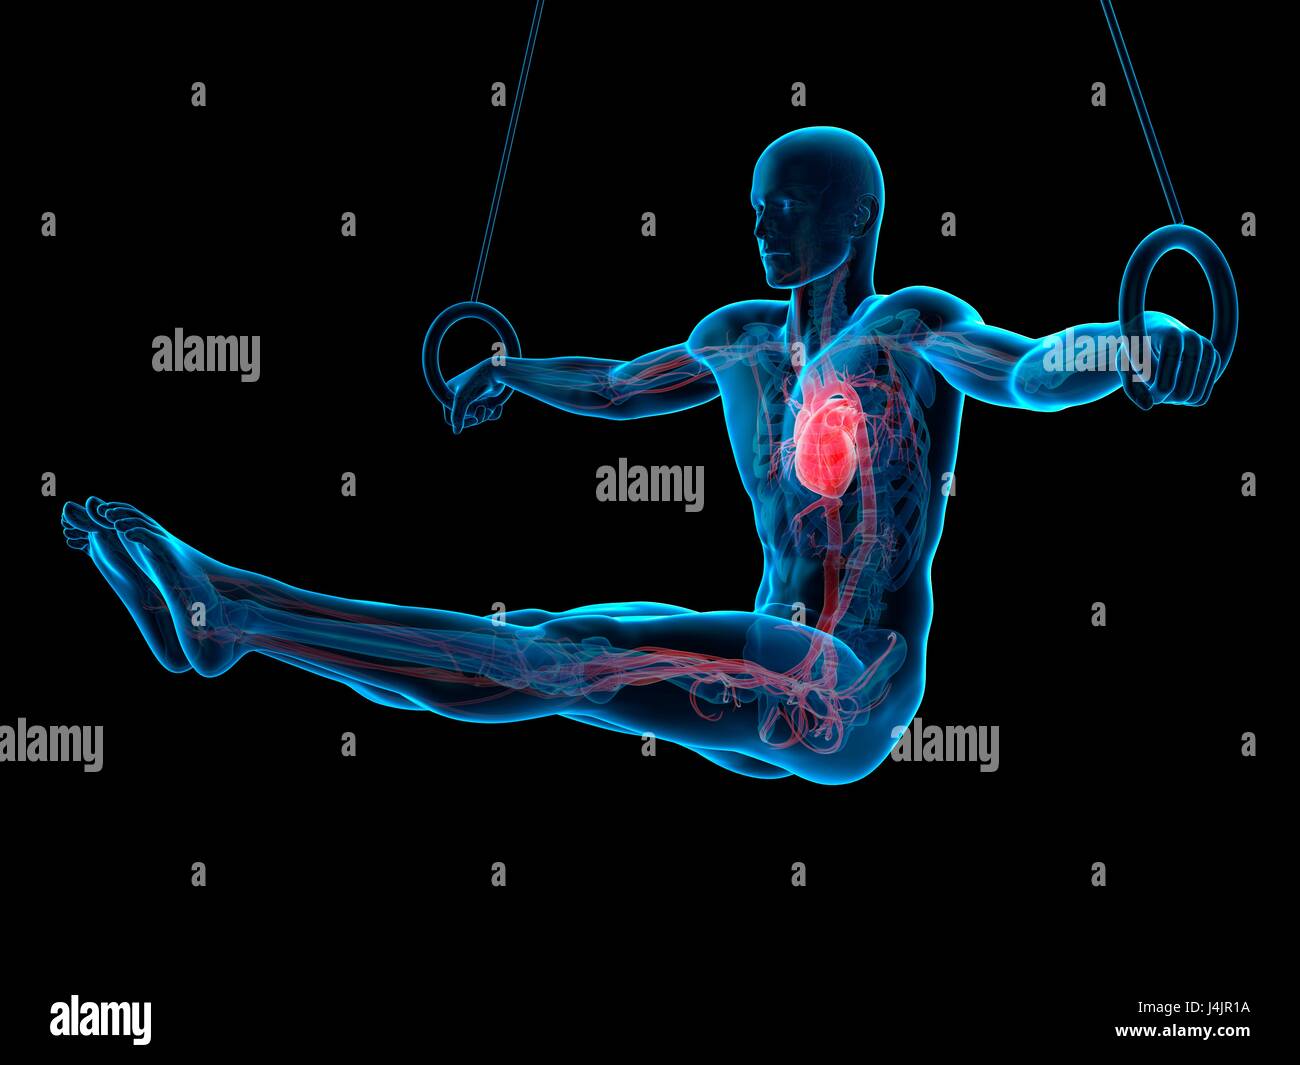 Anatomia di un atleta utilizzando anelli di ginnastica, illustrazione. Foto Stock